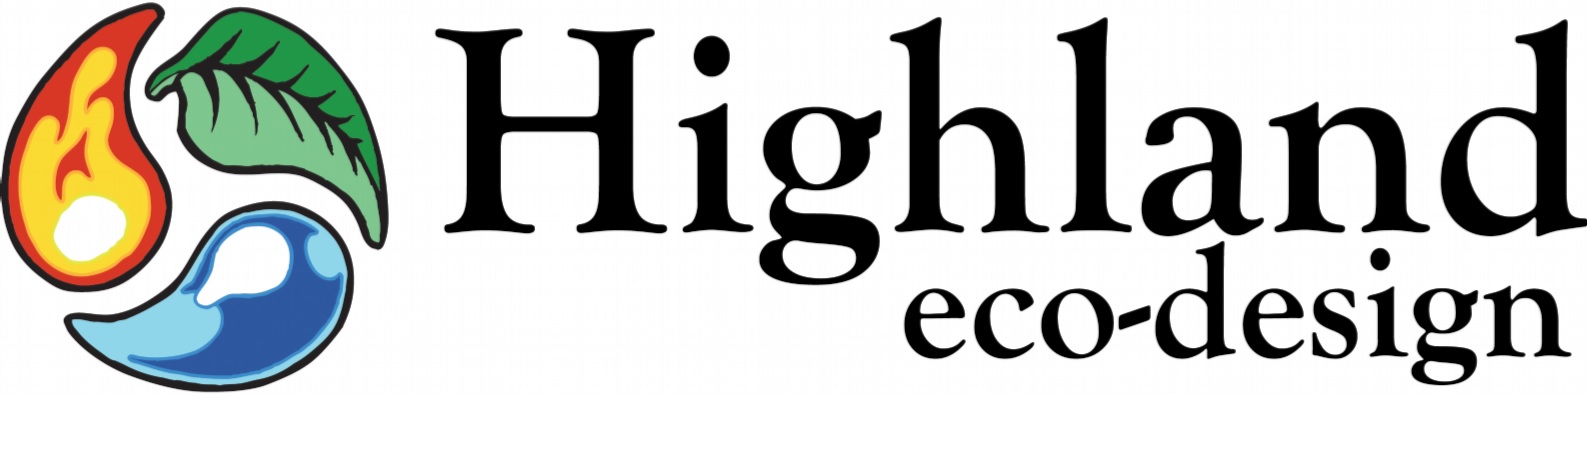 Heco Logo